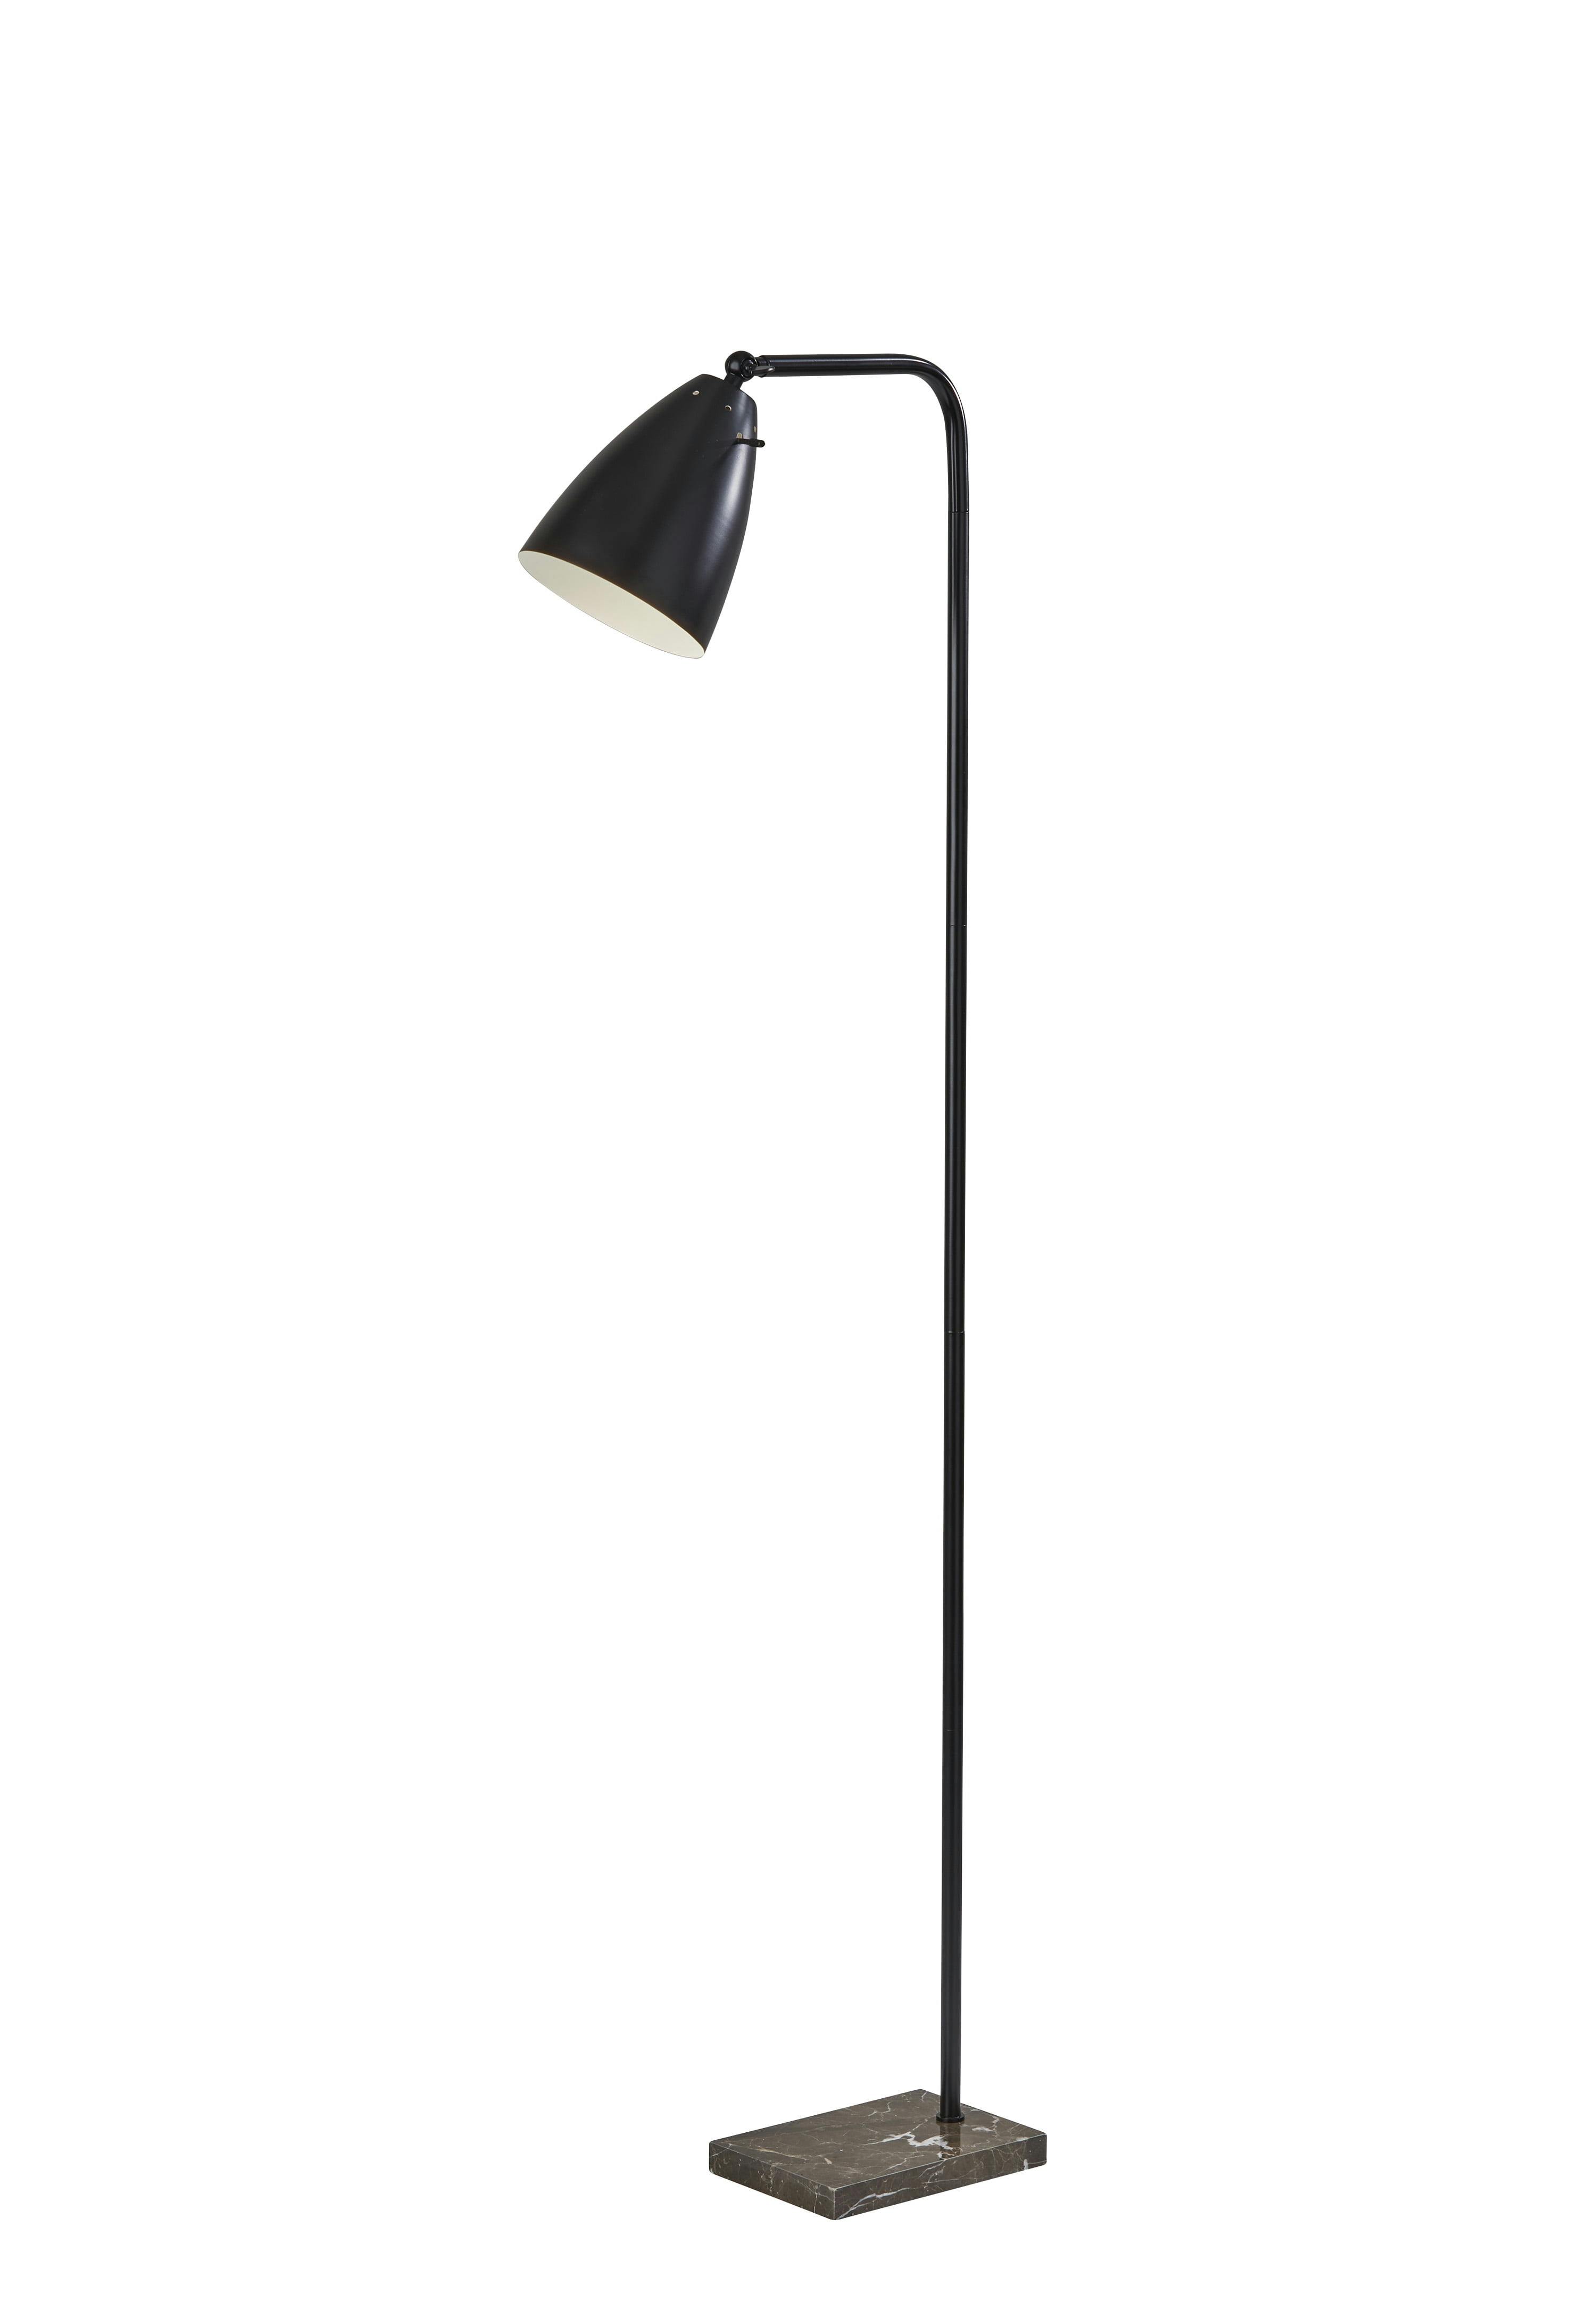 Adjustable Matte Black Metal Floor Lamp with Brown Marble Base